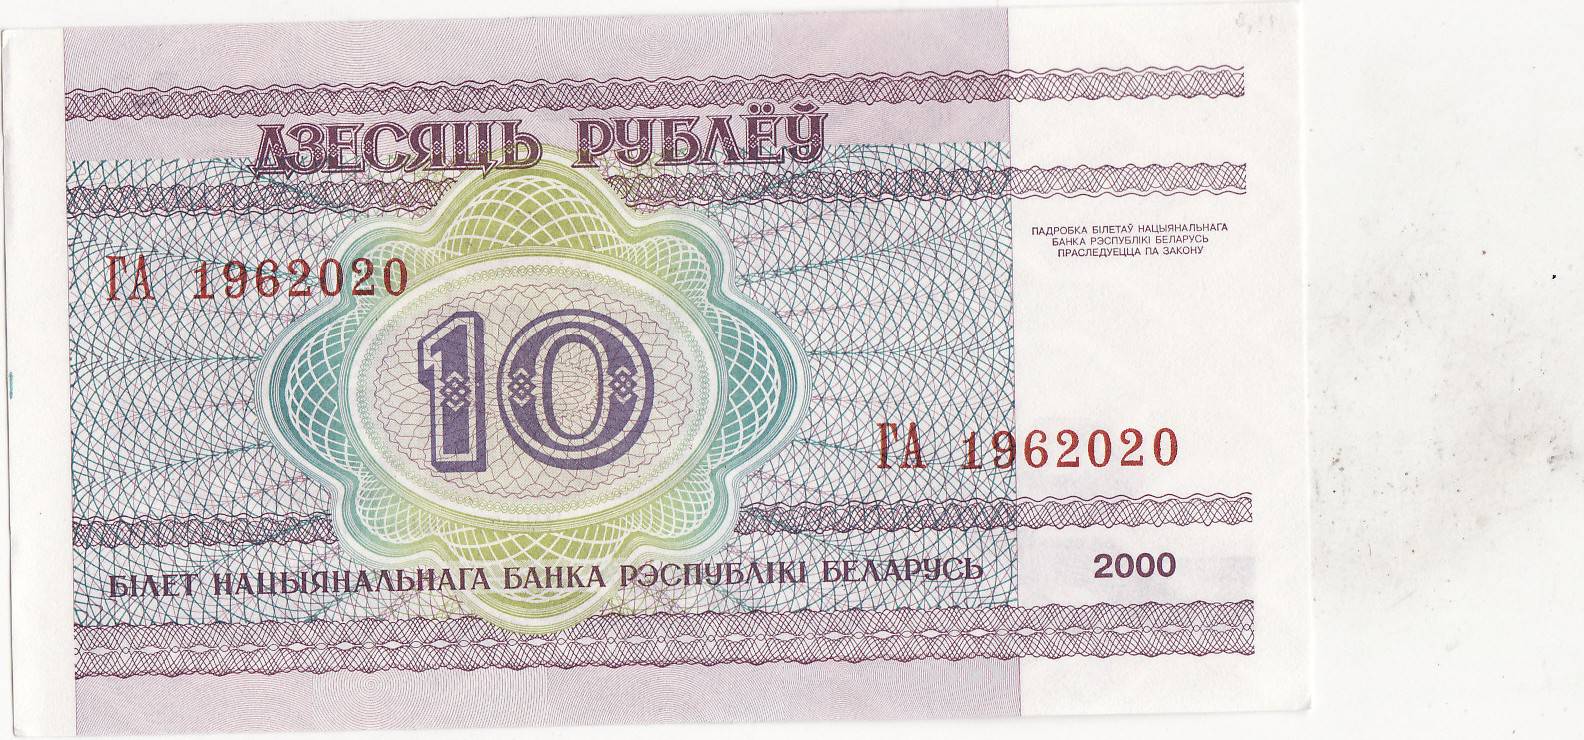 30 рублей белорусских на российские. Бона Беларусь Белоруссия 10 рублей 2000. 10 Рублей 2000 Беларусь.